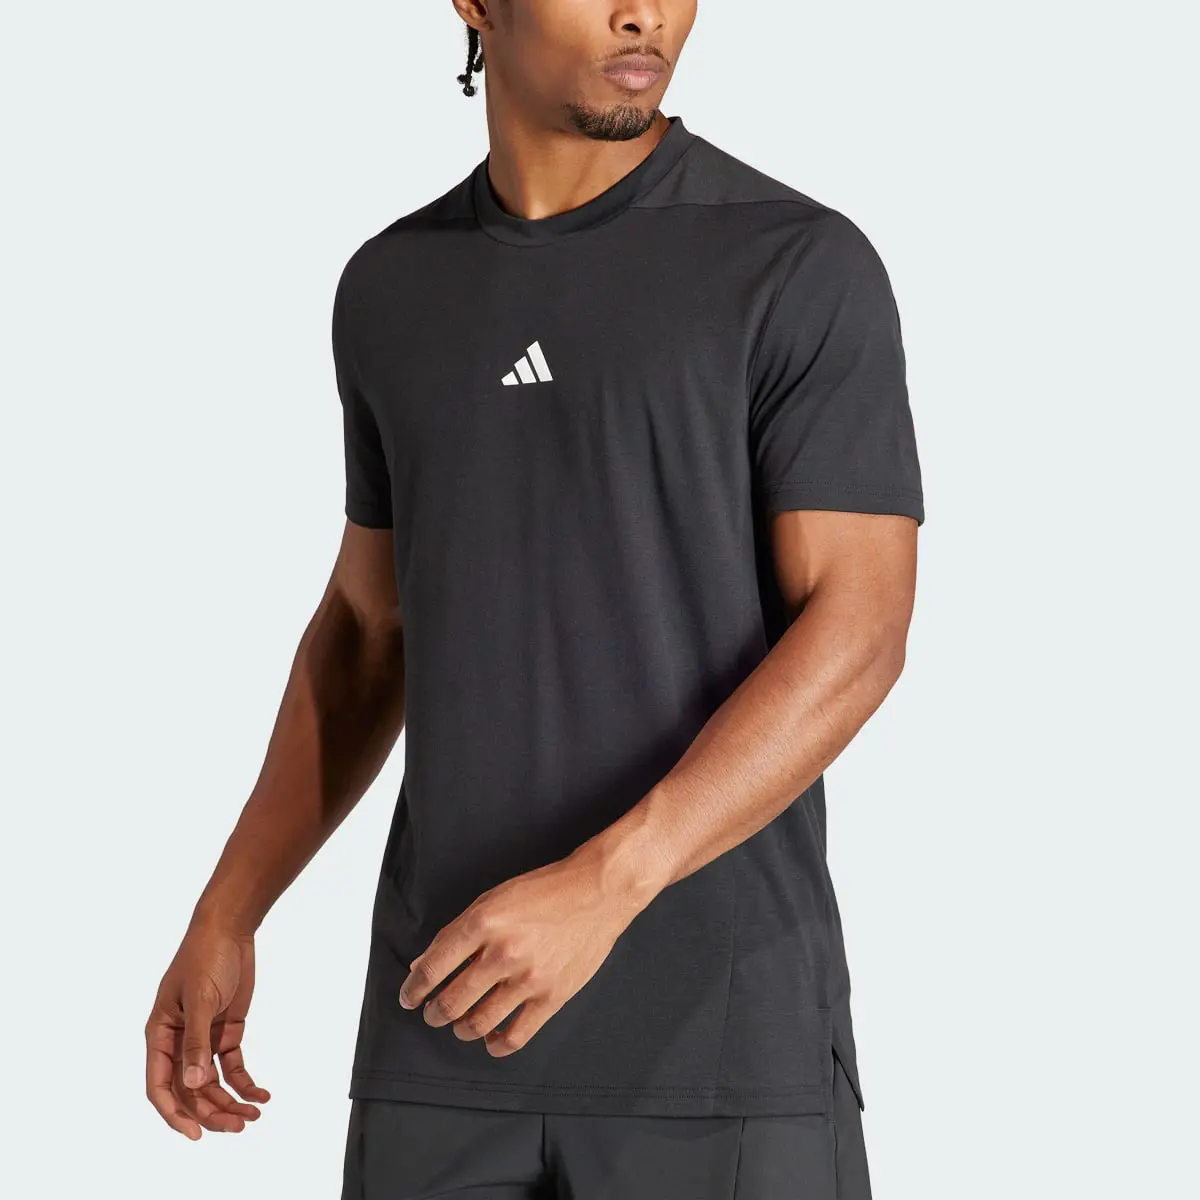 Adidas Camiseta Designed for Training Workout. 1